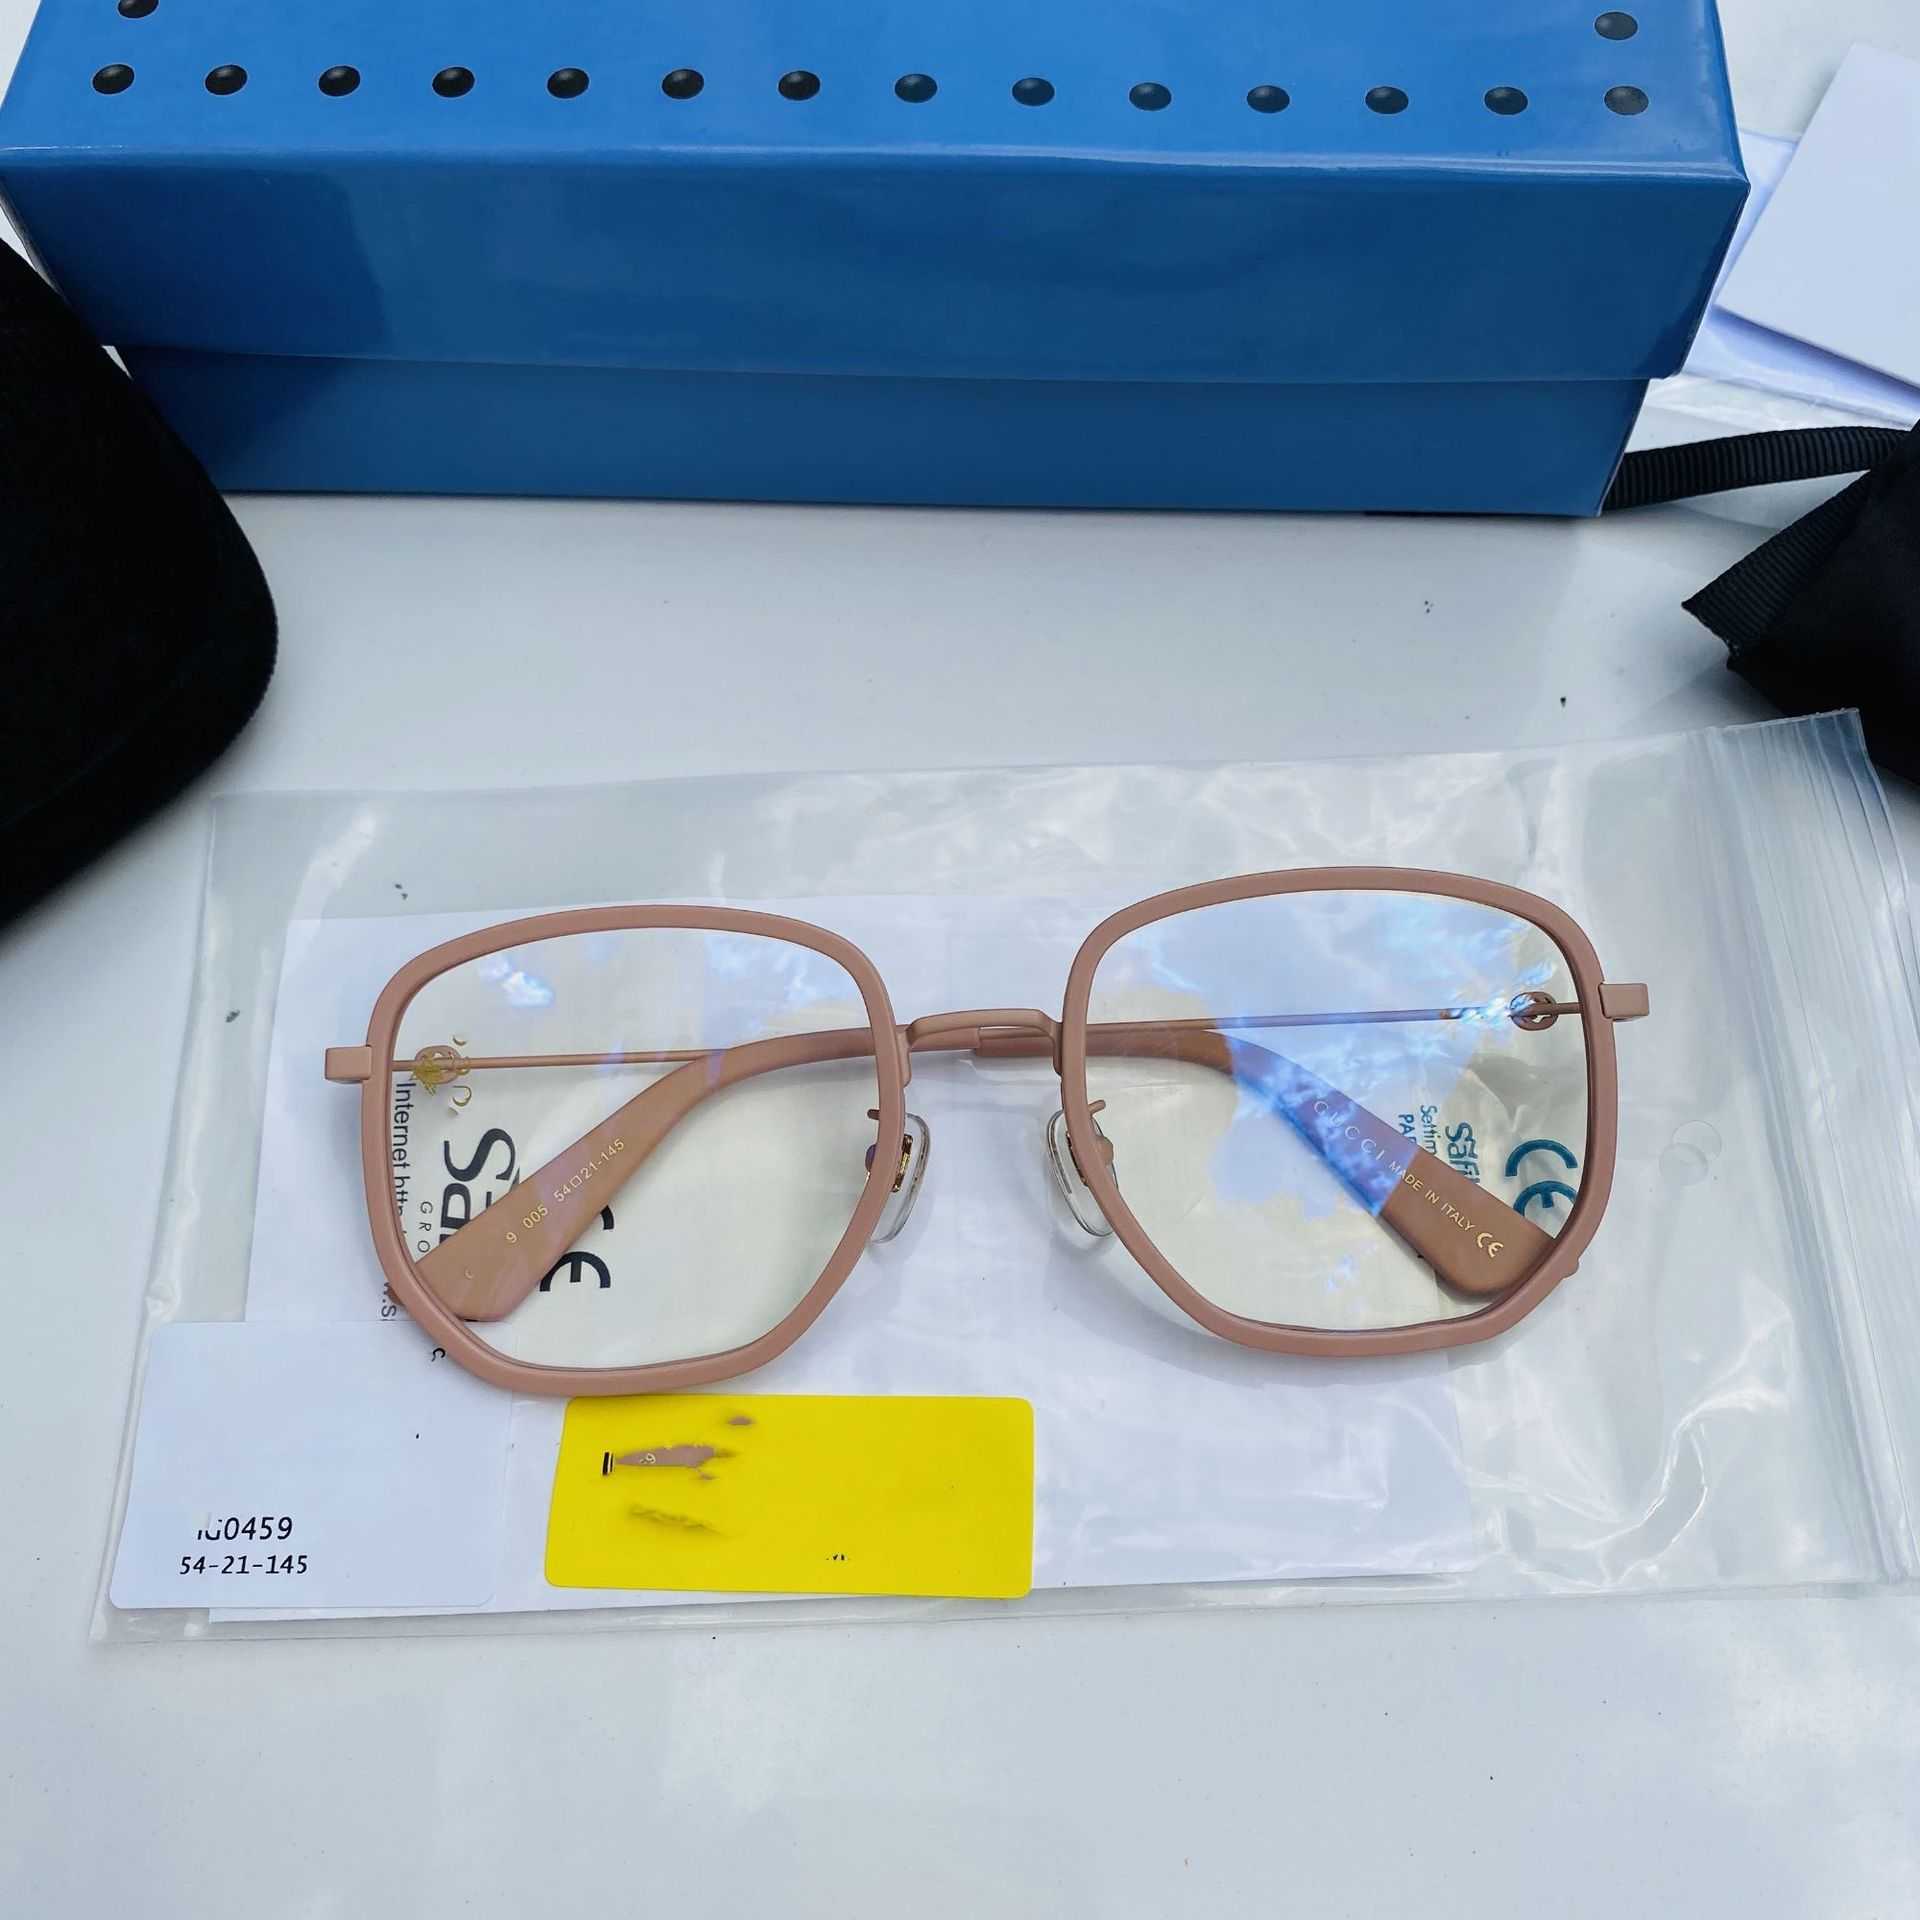 2023 Neue Luxus-Designer-Sonnenbrille, neue flache Linse gg0459, hat einen unregelmäßigen Rahmen und ist beliebt. Das schlichte Gesicht kann mit einer kurzsichtigen kleinen Biene kombiniert werden